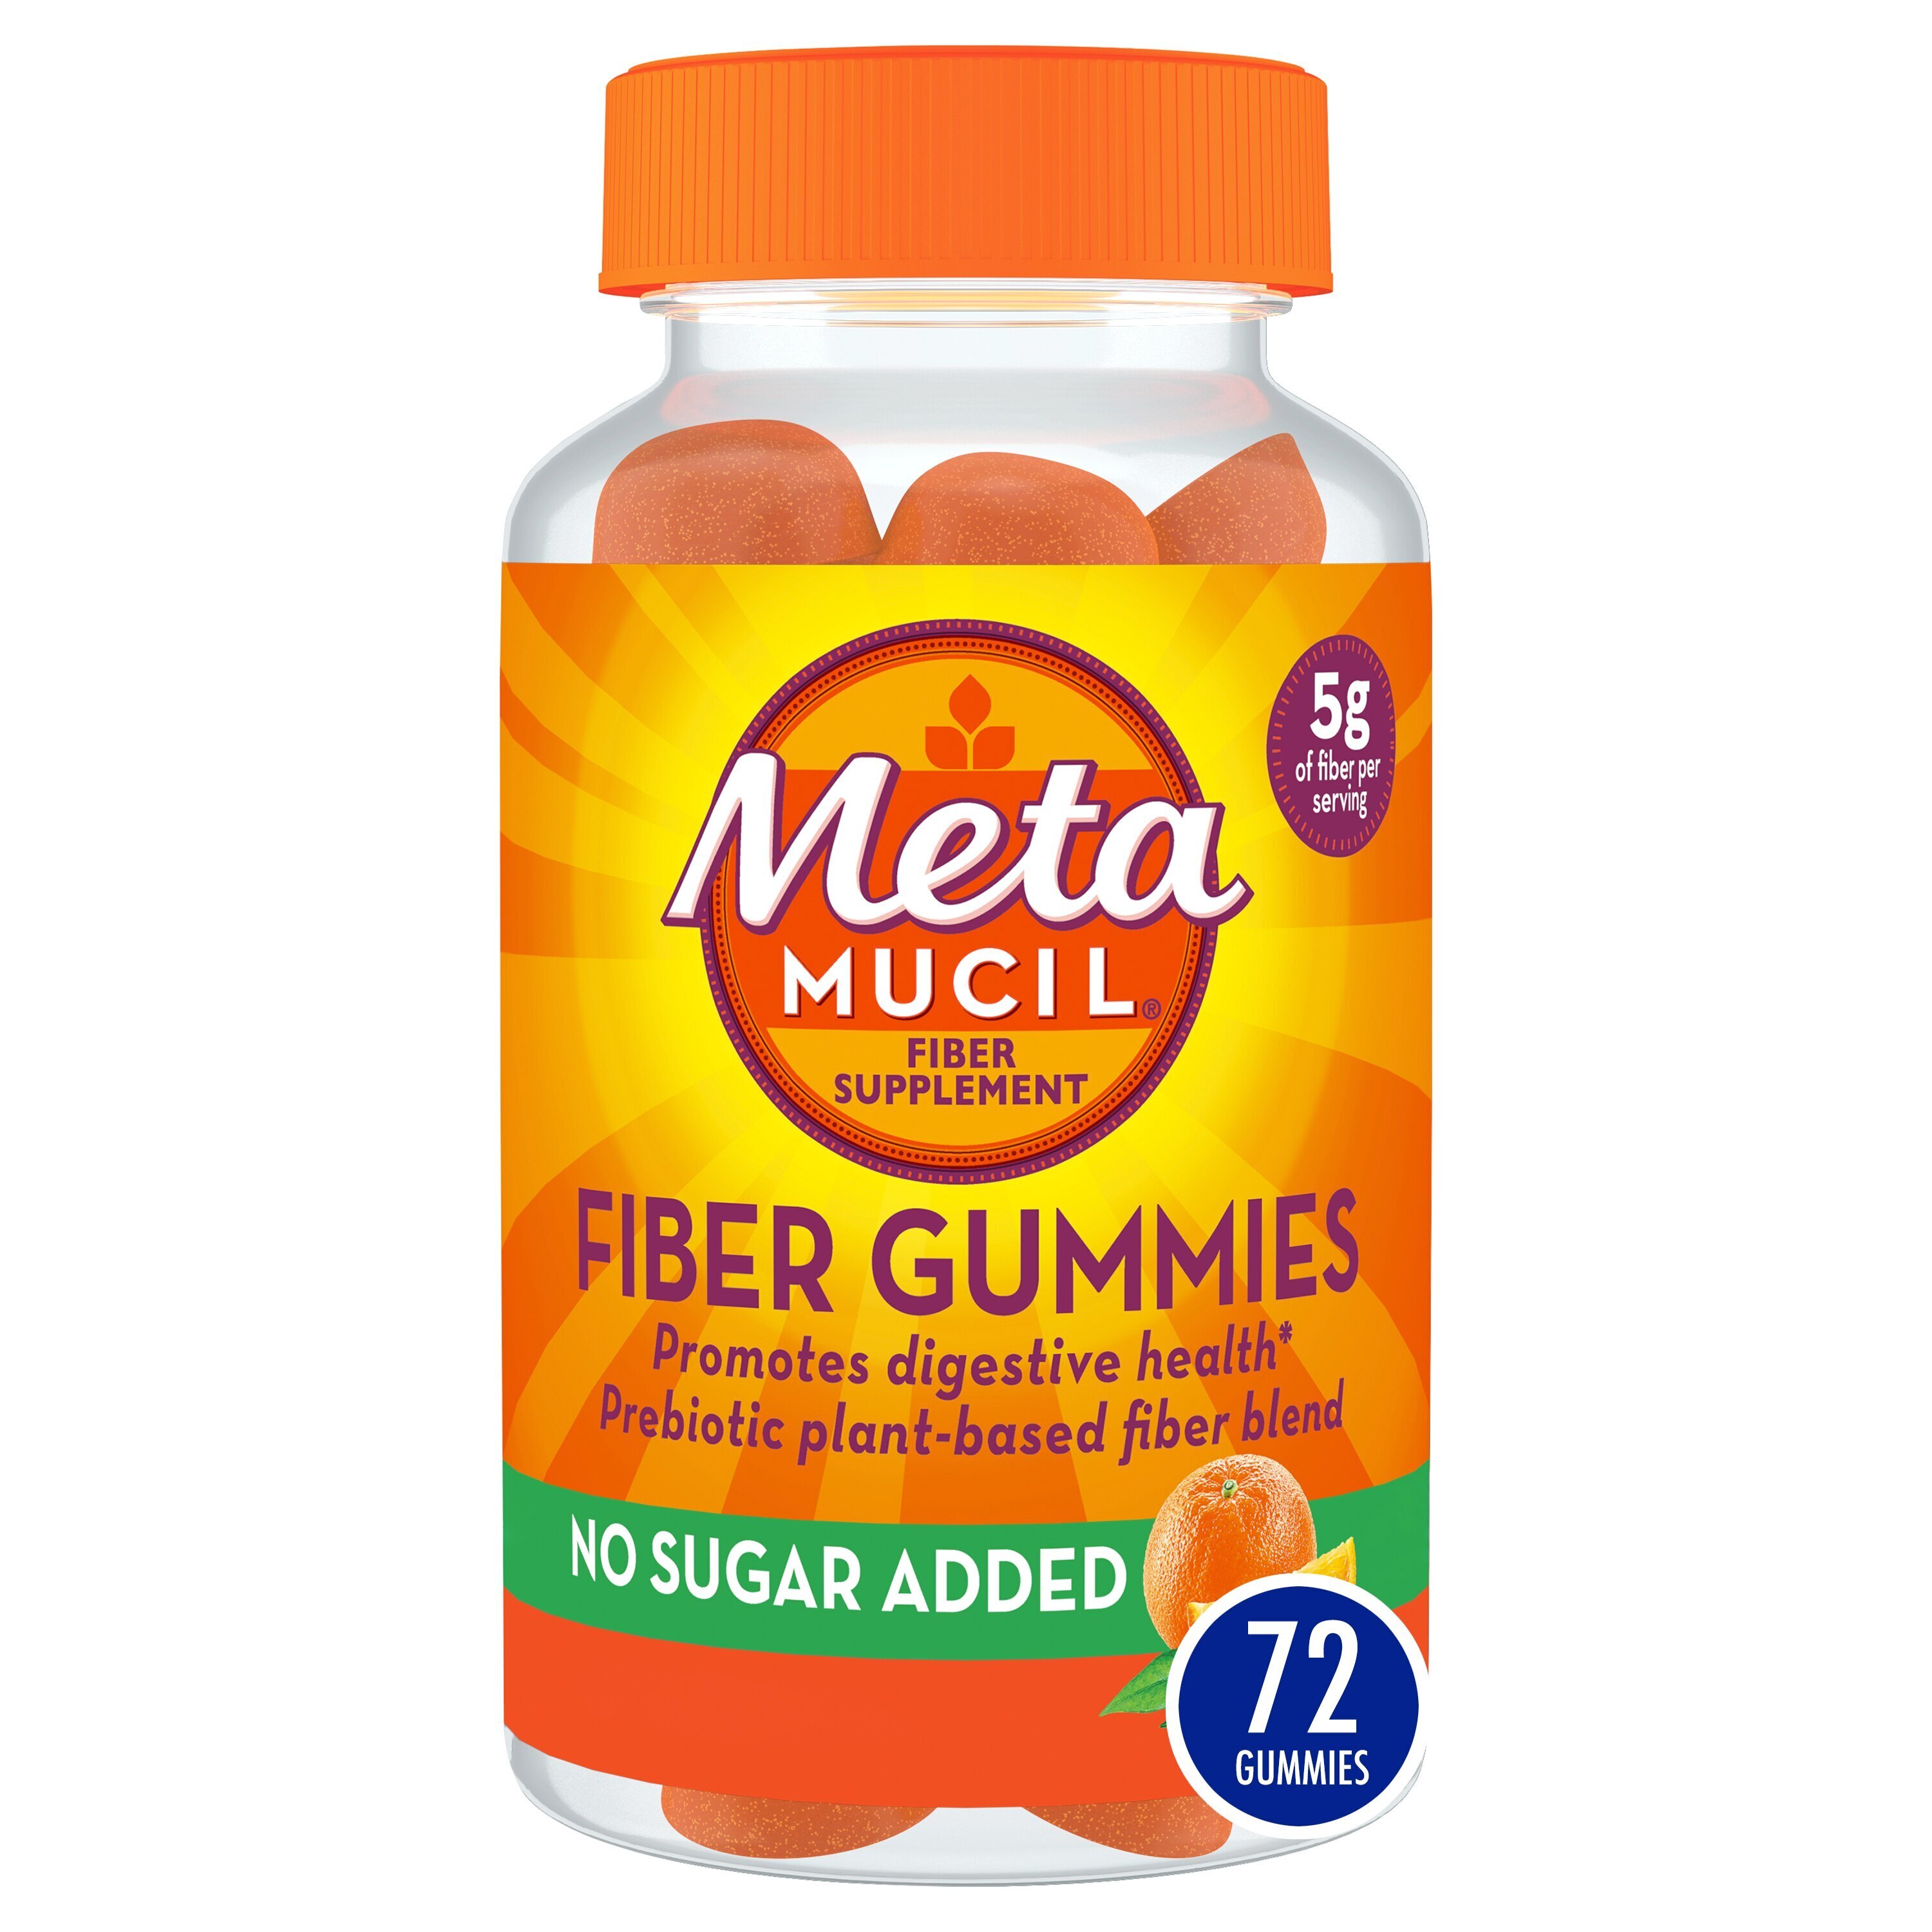 Metamucil Fiber Supplement Gummies, Sugar Free Orange Flavor, 72 CT